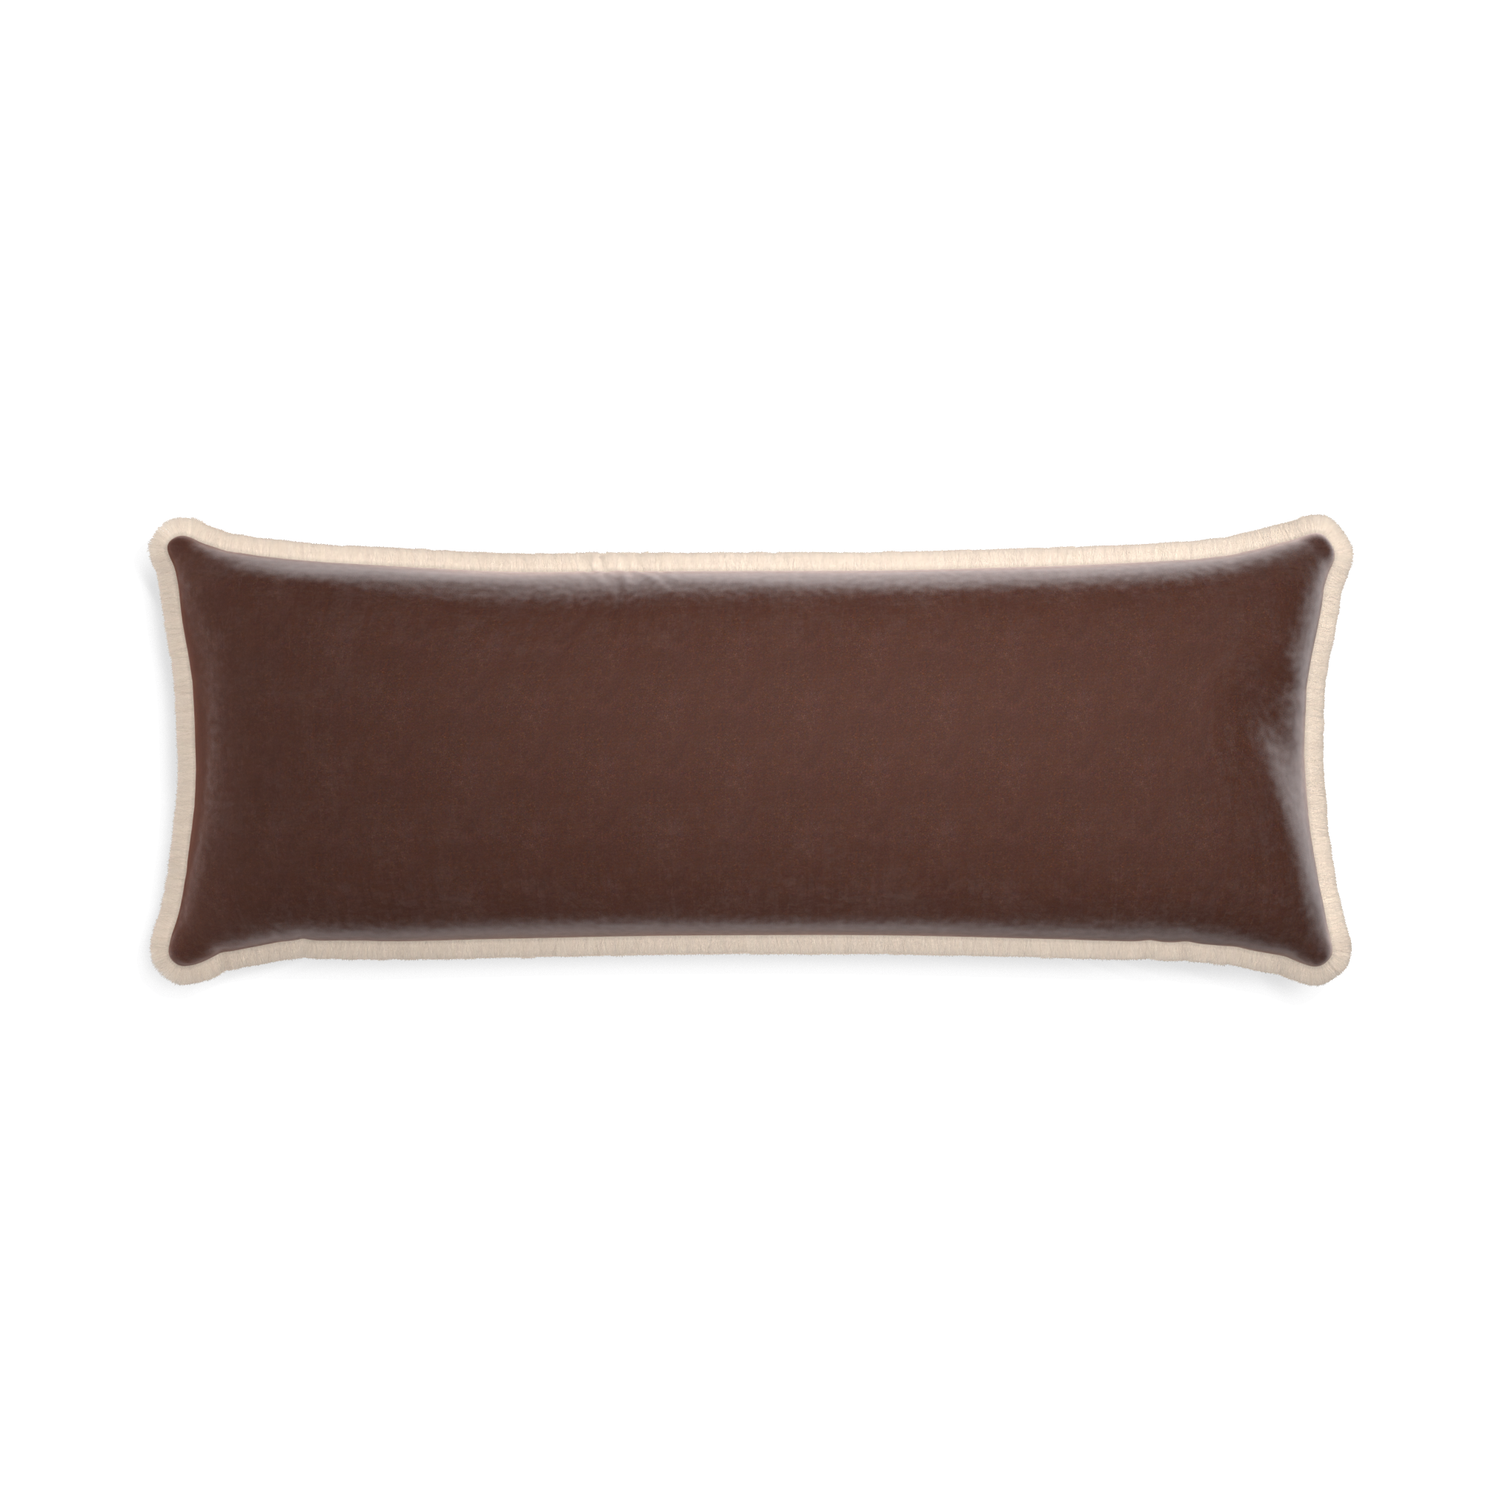 Xl-lumbar walnut velvet custom pillow with cream fringe on white background